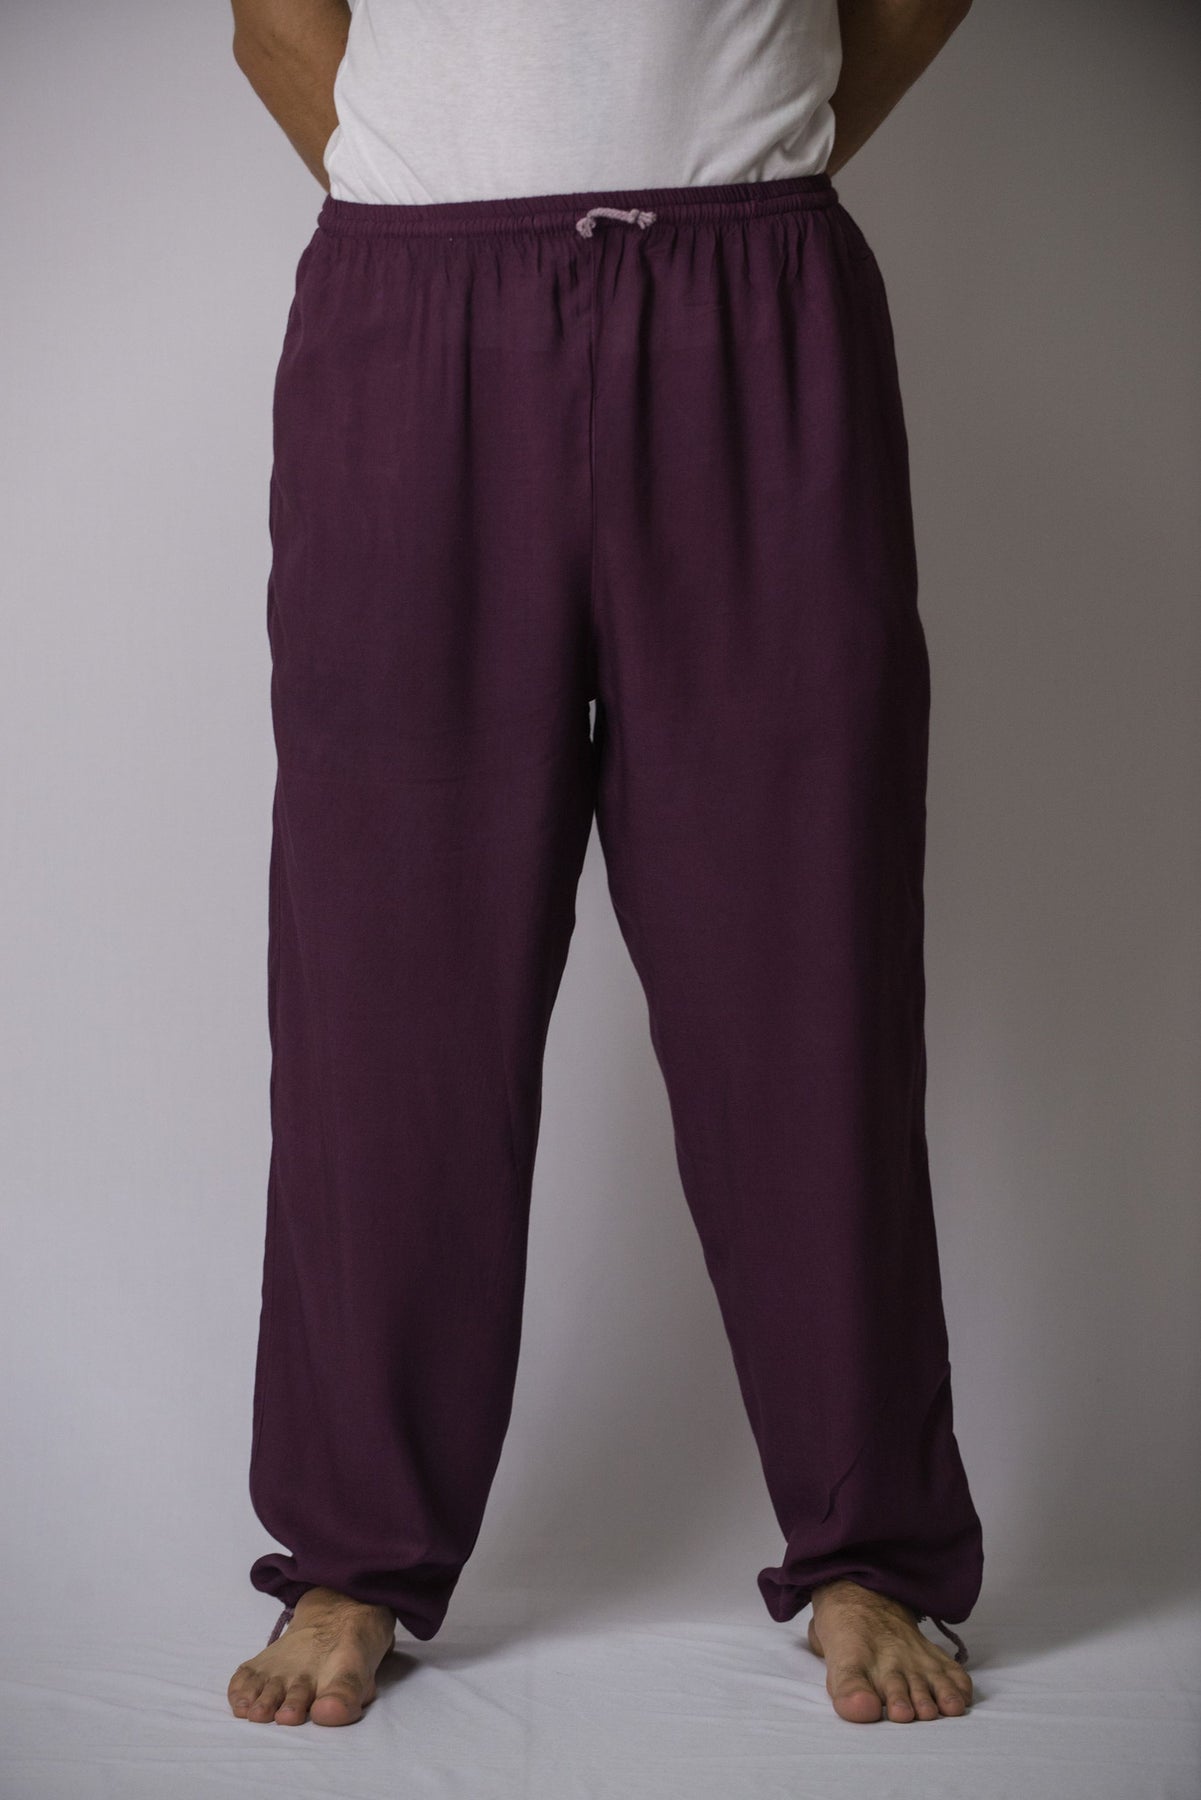 Solid Color Drawstring Men's Yoga Massage Pants in Dark Purple – Harem ...